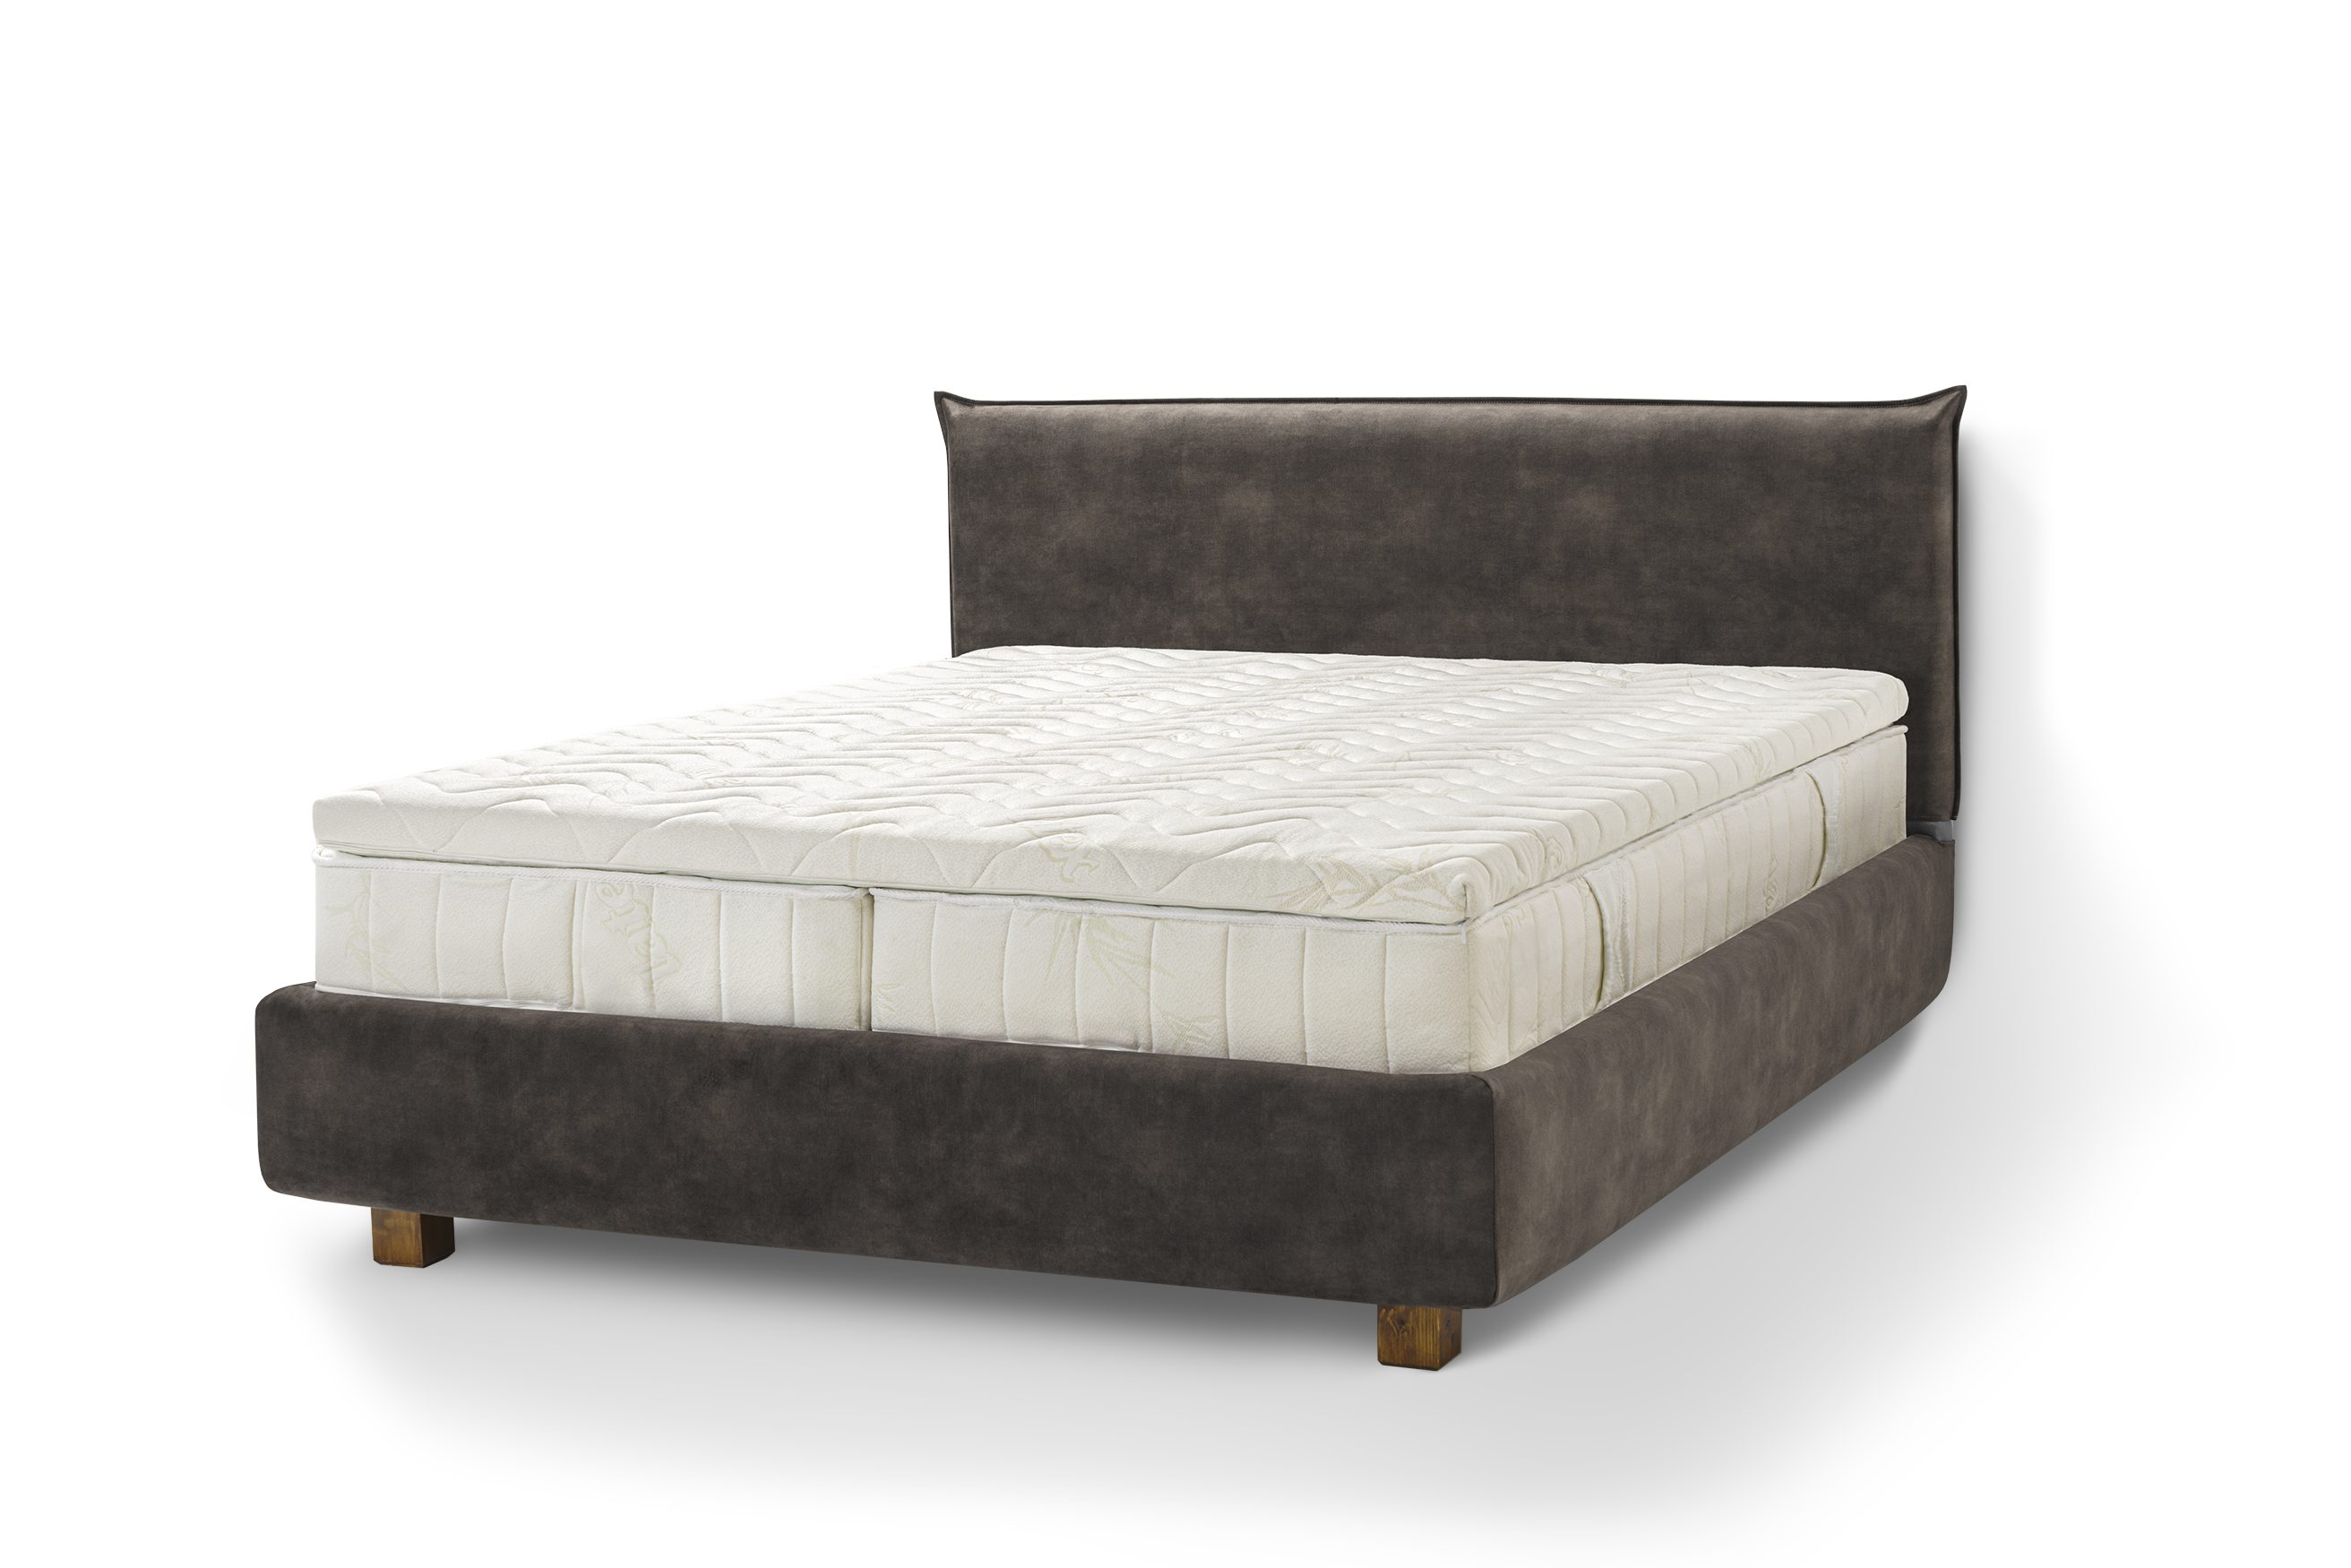 Letti Moderni Holzbett Bett Puro, hergestellt aus hochwertigem Massivholz Plüsch Anthracite